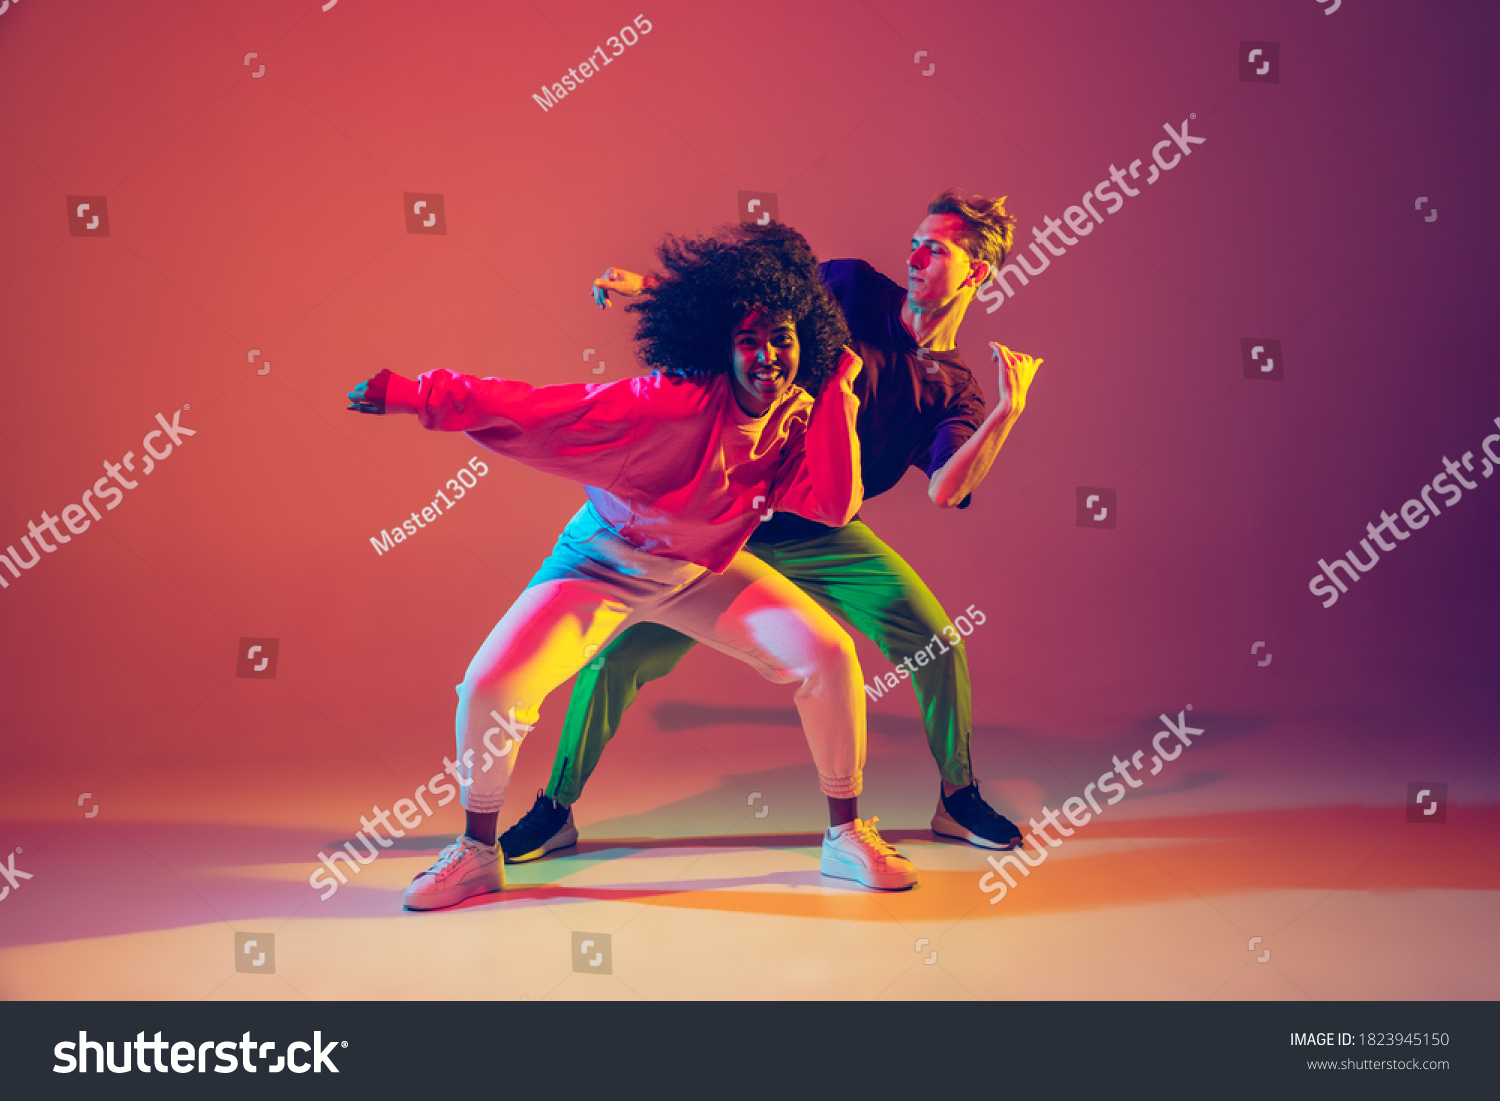 Stilvolle Mann und Frau tanzen Hip Hop in hellen Kleider auf grünem Hintergrund in der Tanzhalle im Neonlicht. Jugendkultur, Hip Hop, Bewegung, Stil und Mode, Action. Modeporträt. – Stockfoto